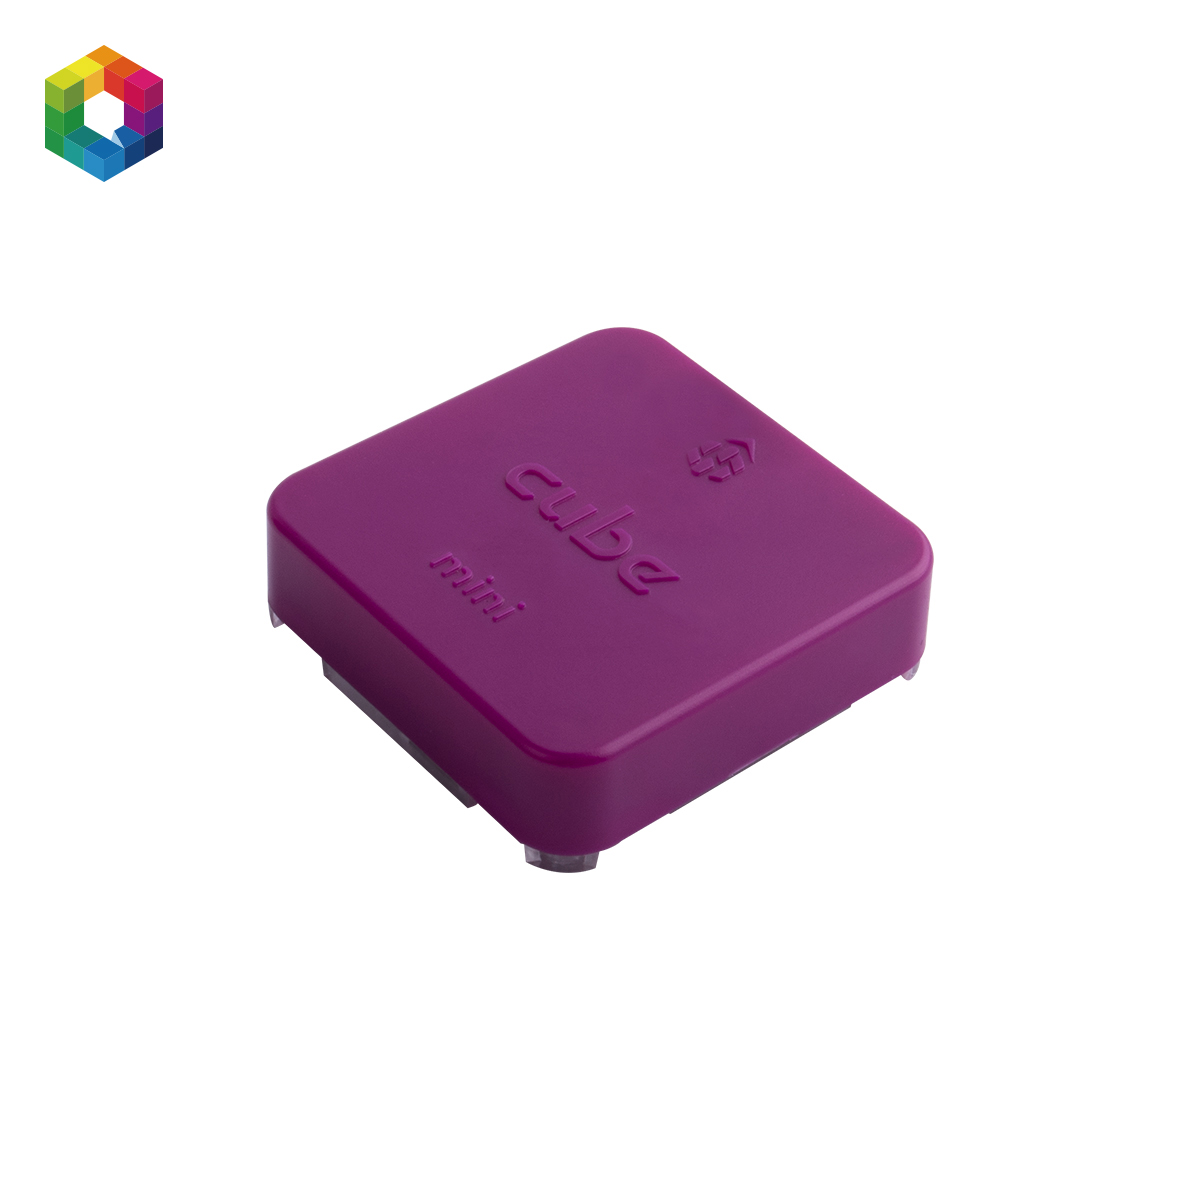 Cube purple